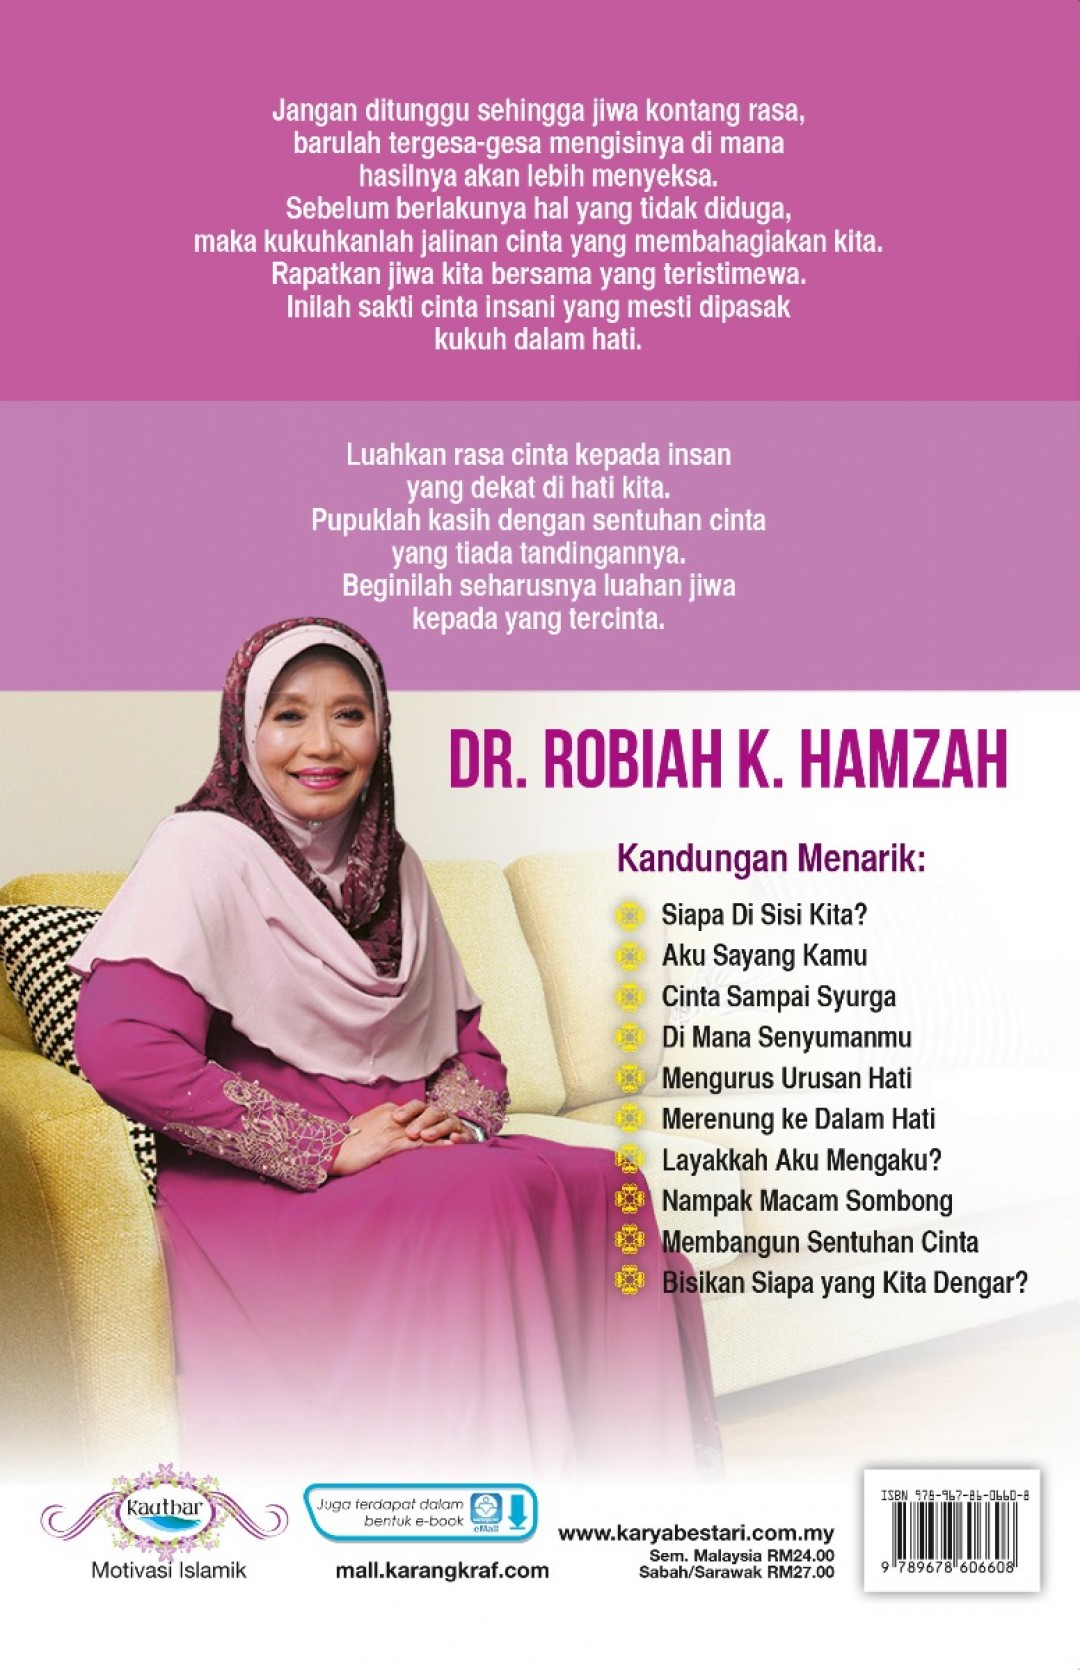 Sentuhan Cinta 10 Minit - Dr. Robiah K. Hamzah